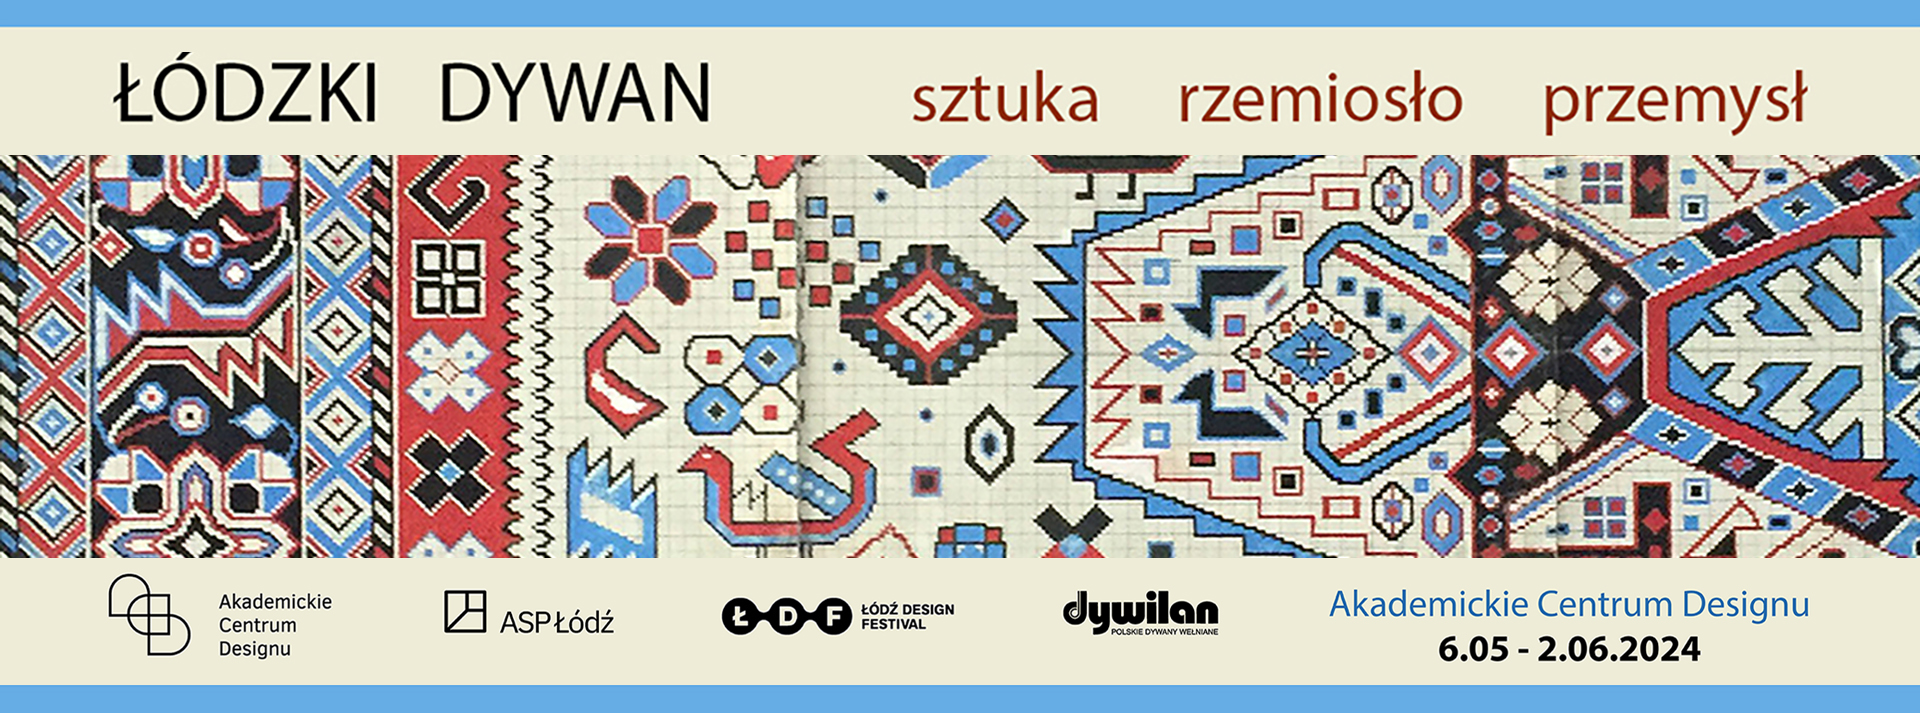 Baner reklamujący wystawę Łódzki dywan.